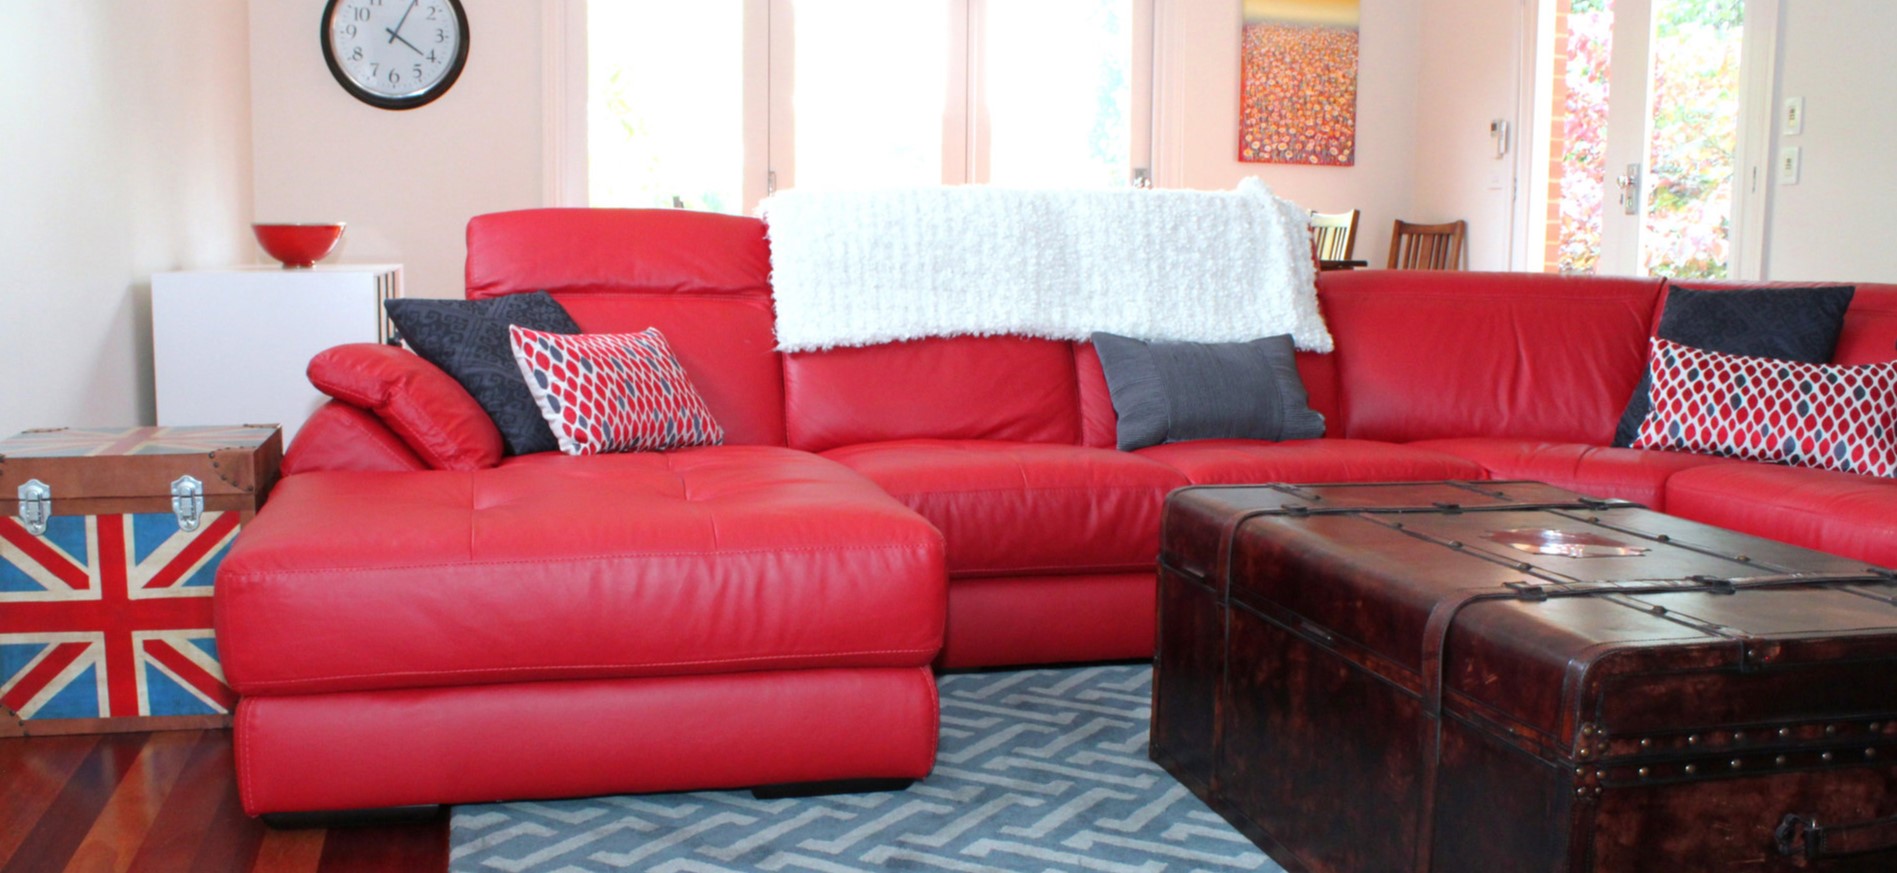 Красный кожаный диван будет стильно смотреться в светлой комнате